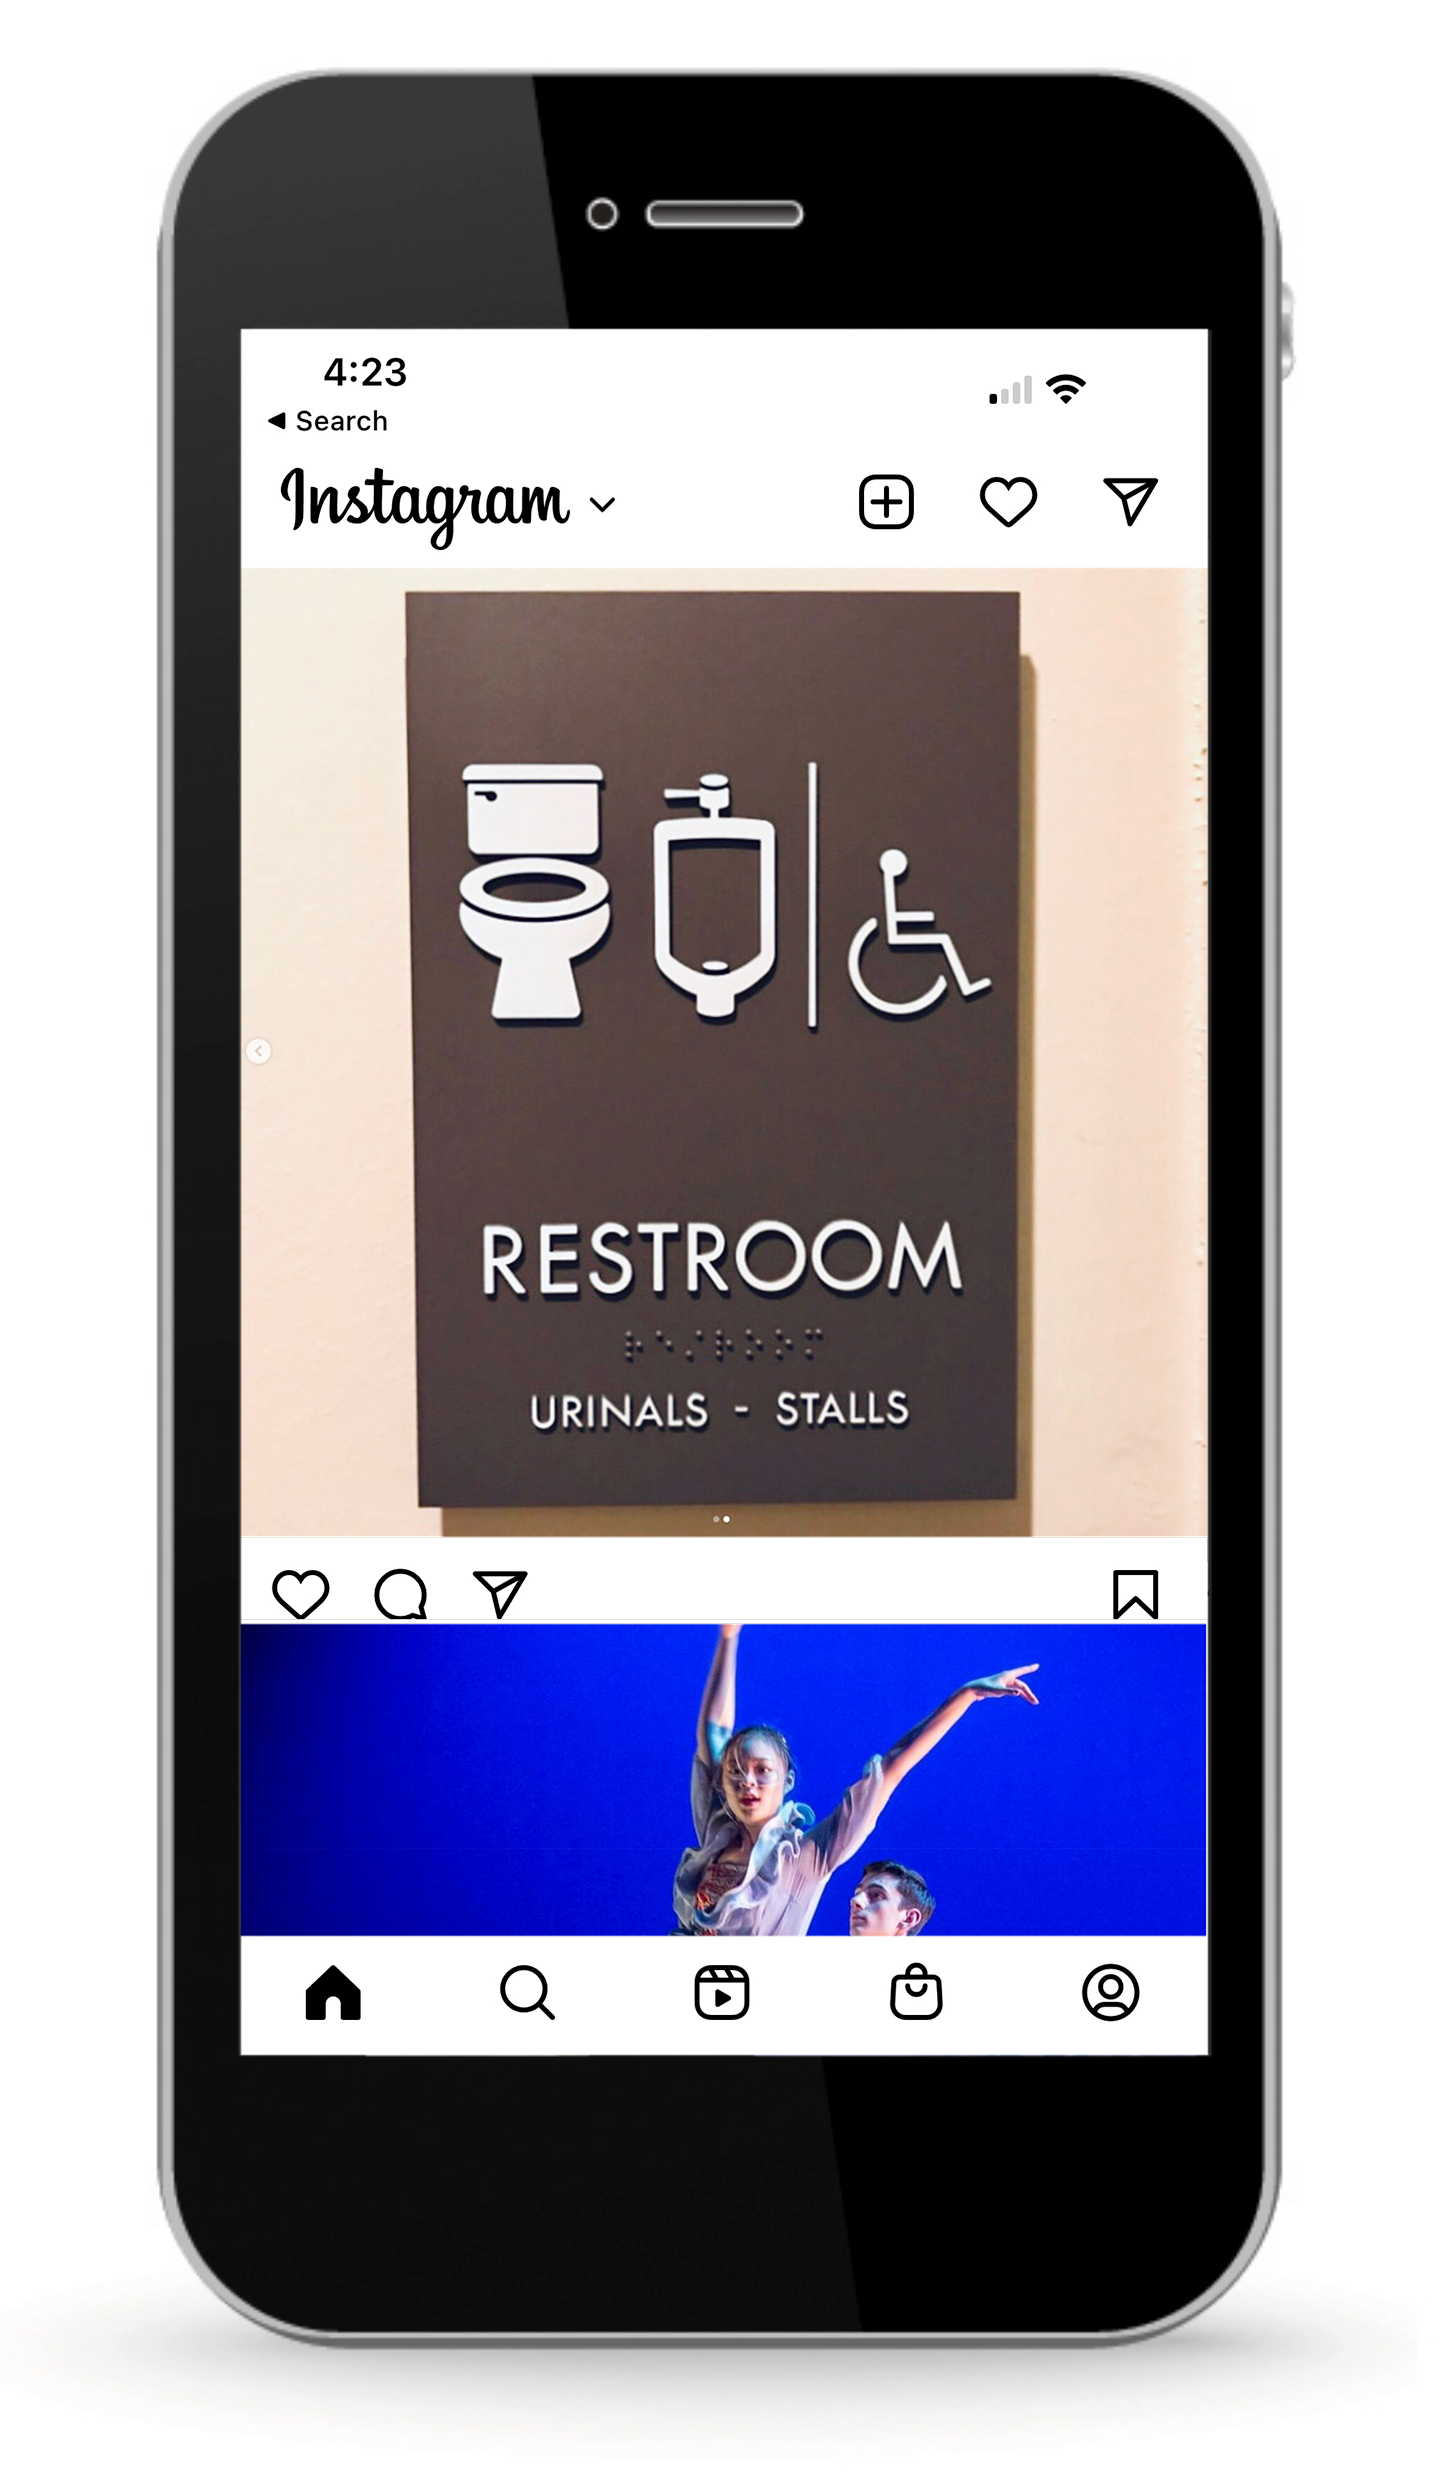 sr-social media-bathroom-sign_ mobile-phone-image copy.png